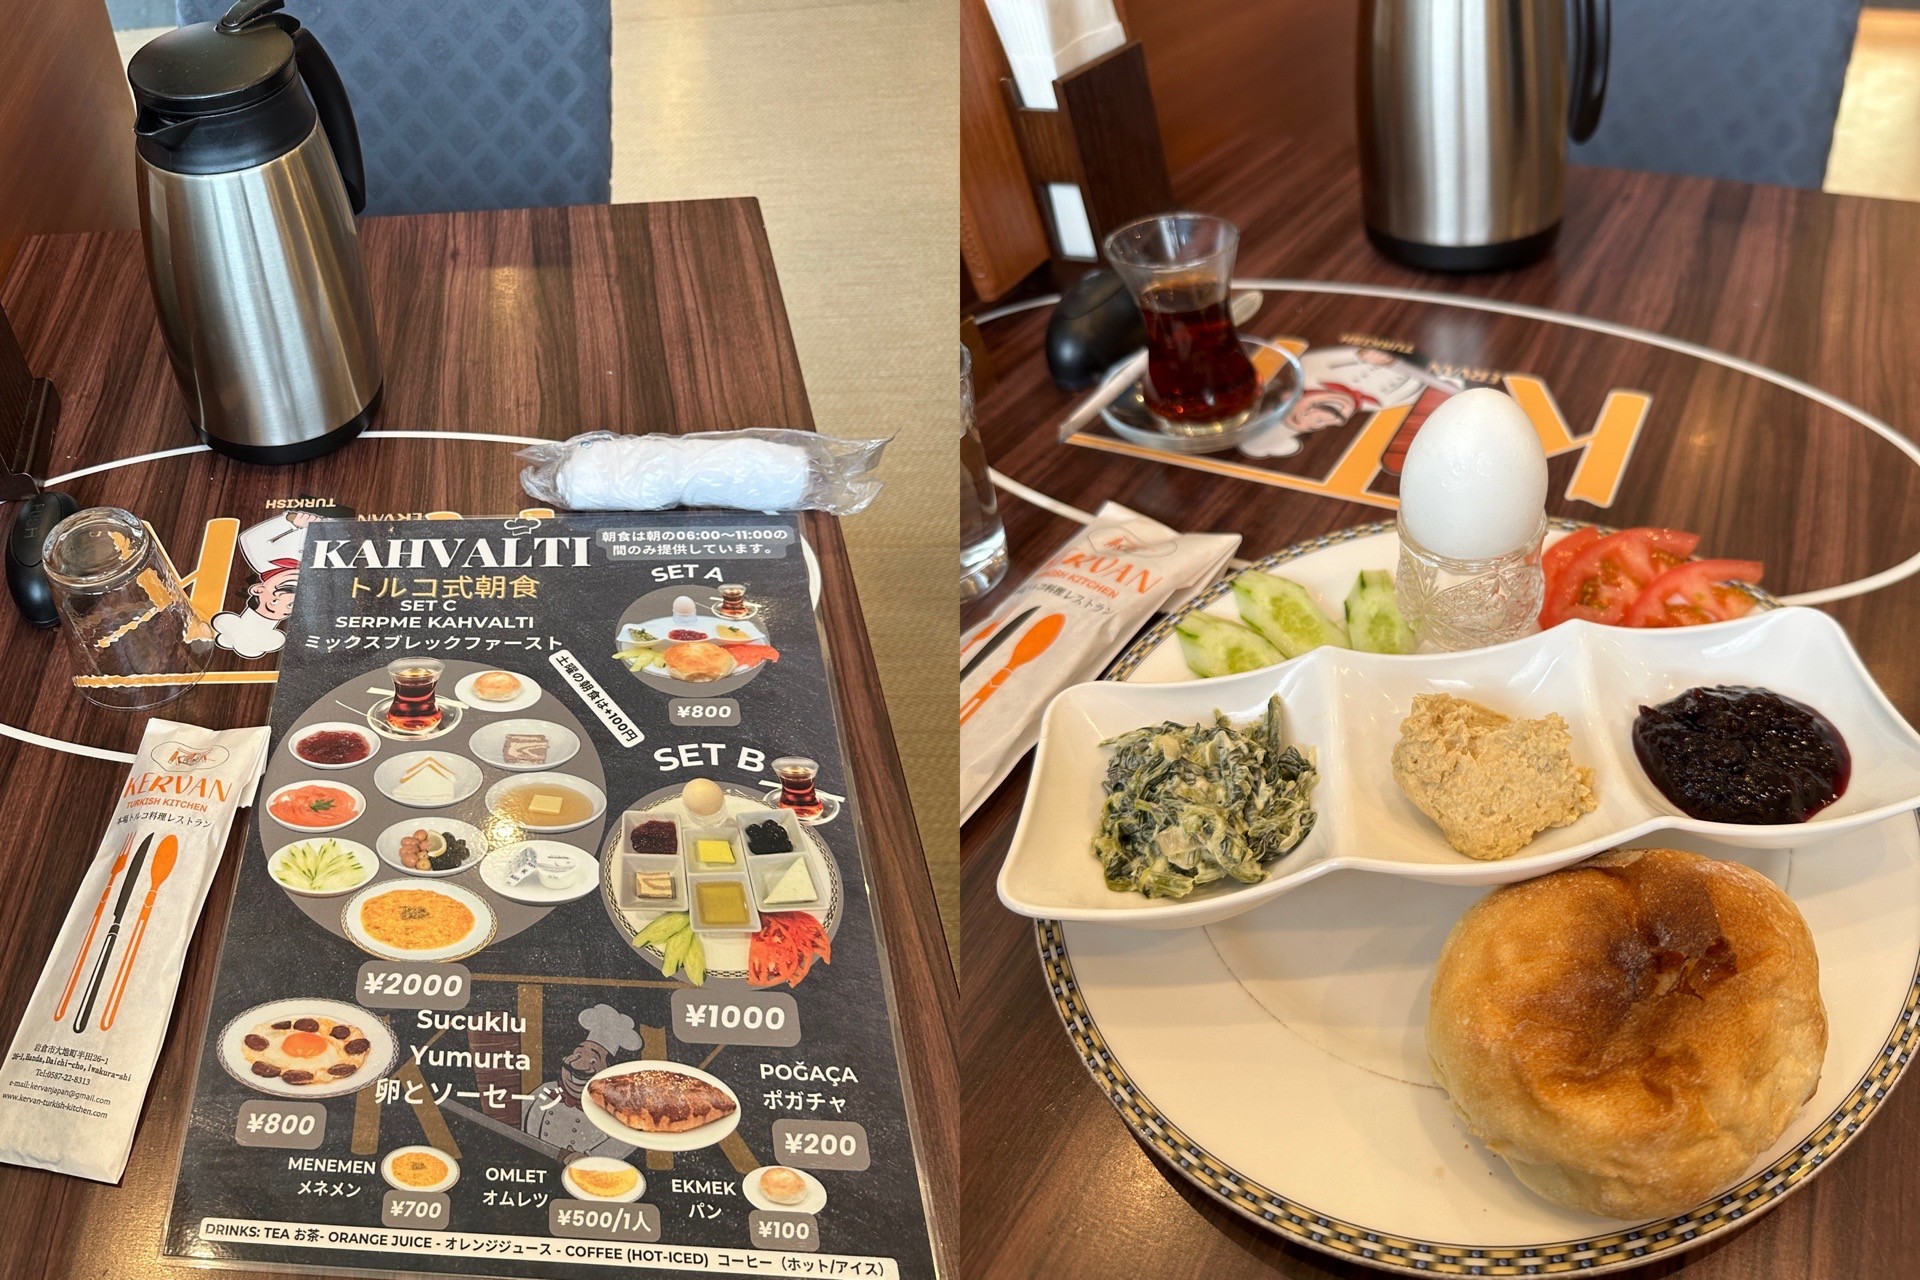 モーニングメニュー。「土曜の朝食は+100円」って書いてあるけどSET A は800円のままだった。 (@ Kervan Turkish Kitchen in 岩倉市, 愛知県) 